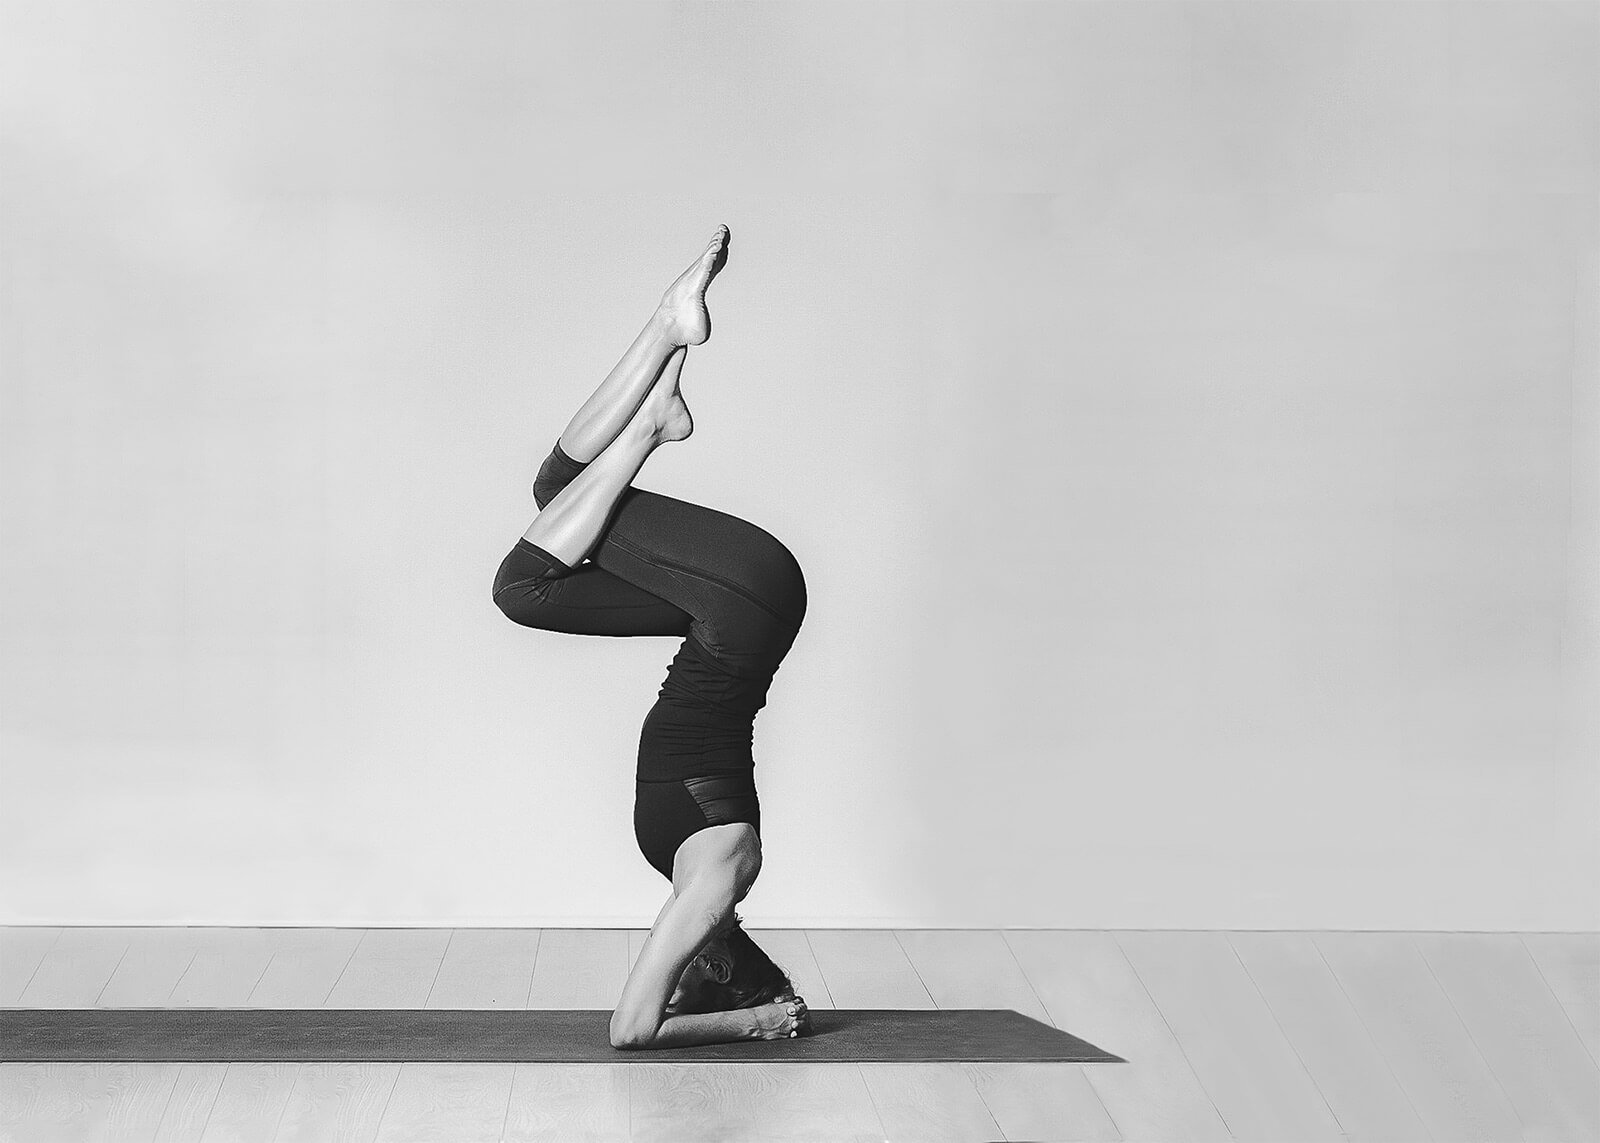 Improvisa objetos de yoga con lo que tienes en casa - Yoga with Marian